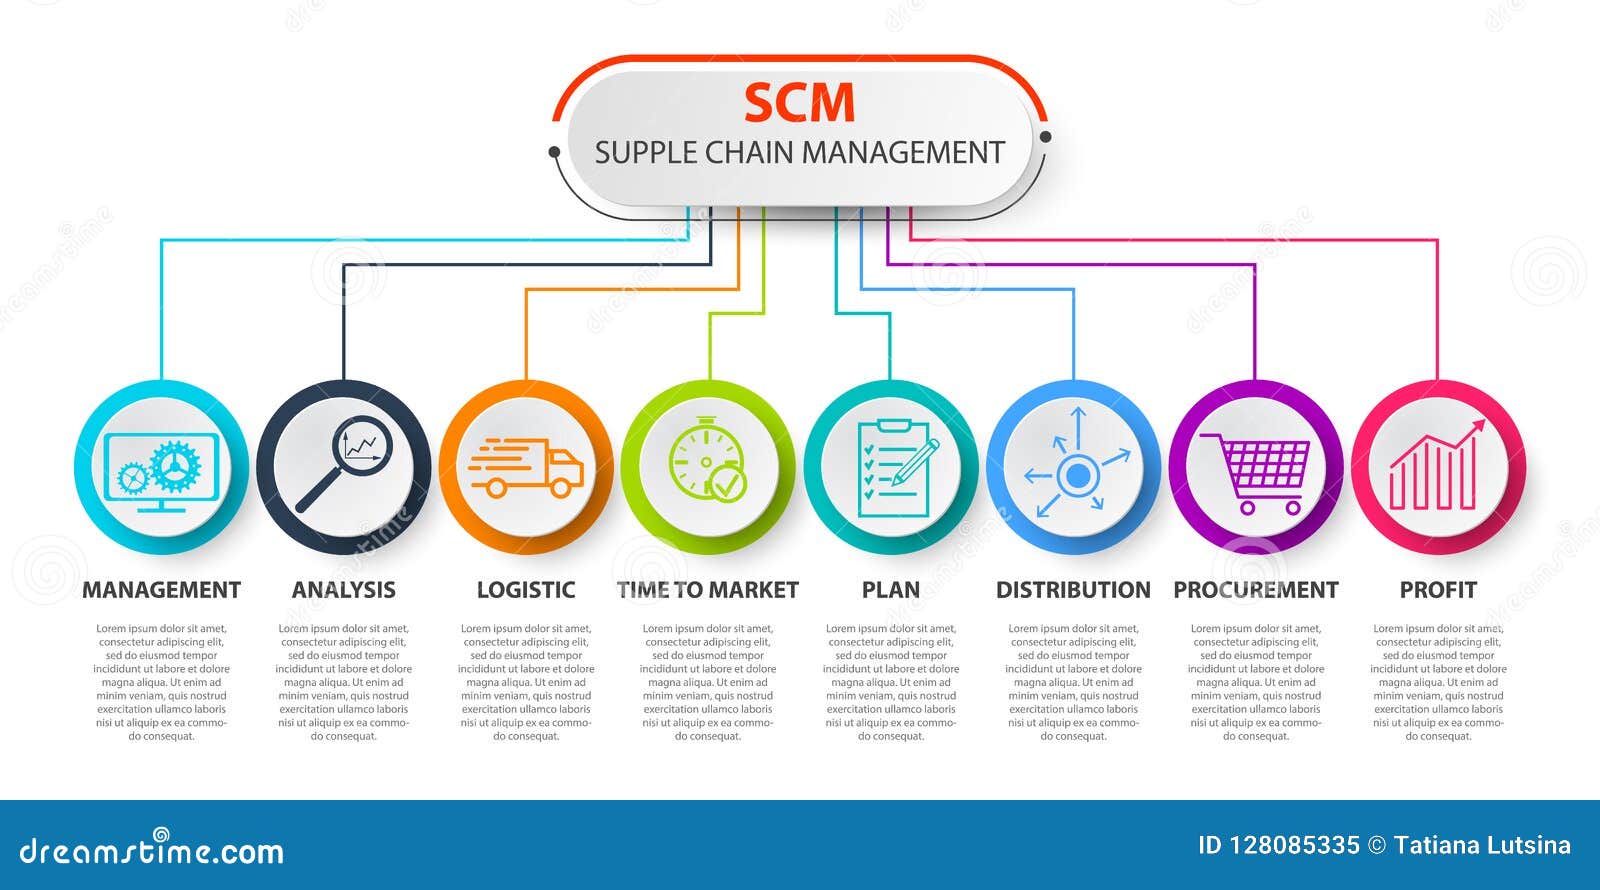 SCM - Supply Chain Management Concep. SCM Concept Template ...